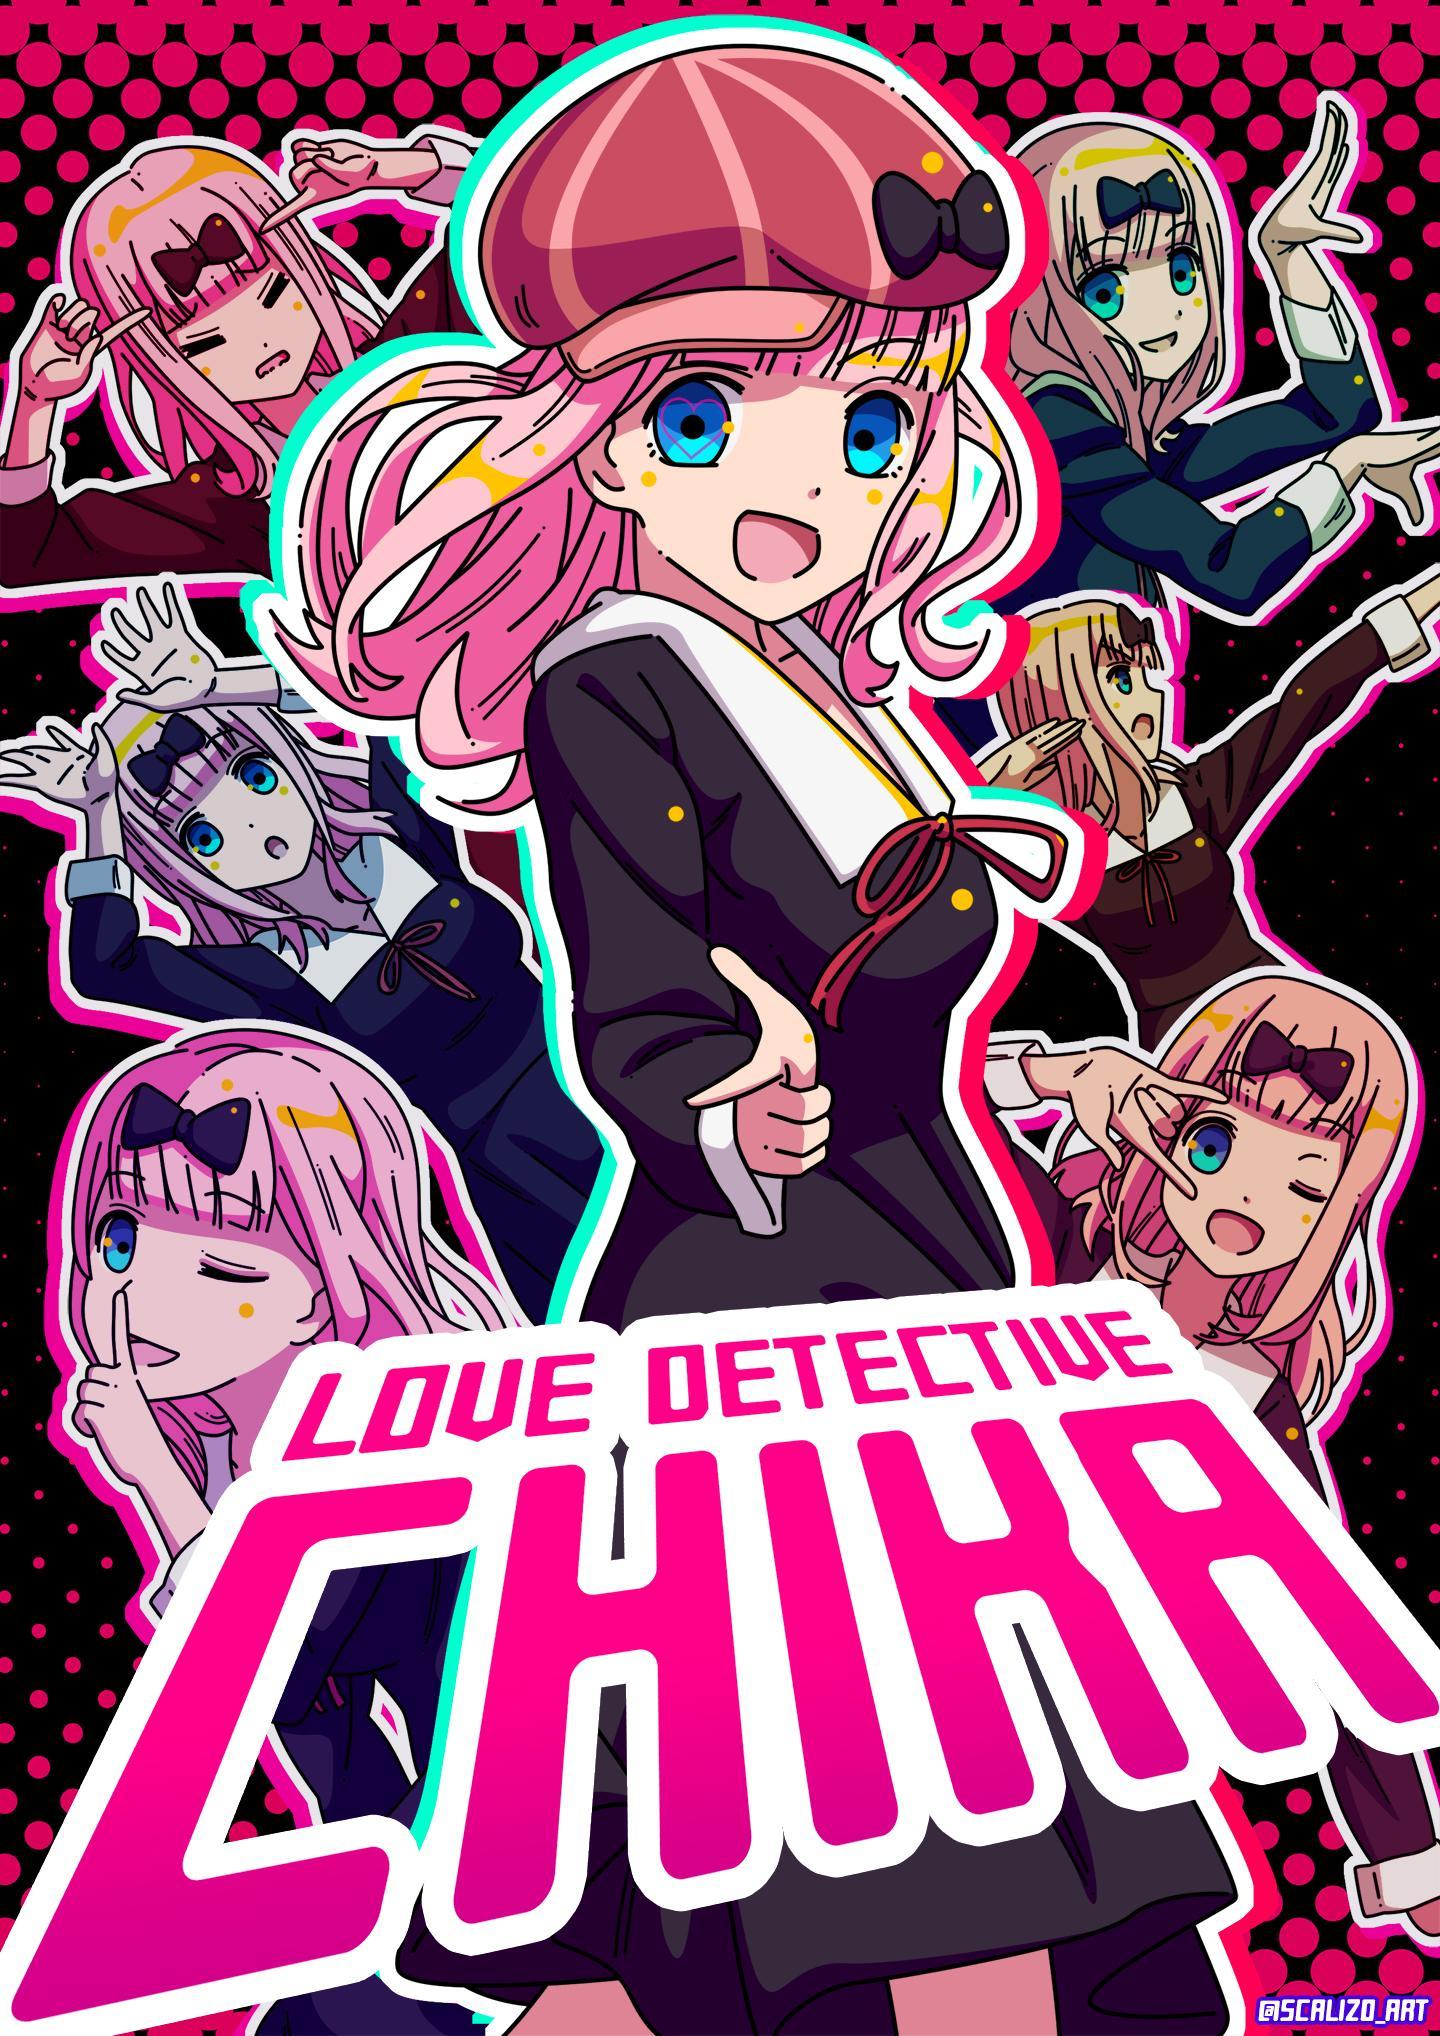 Love Detective Chika. Kaguya Sama: Love Is War